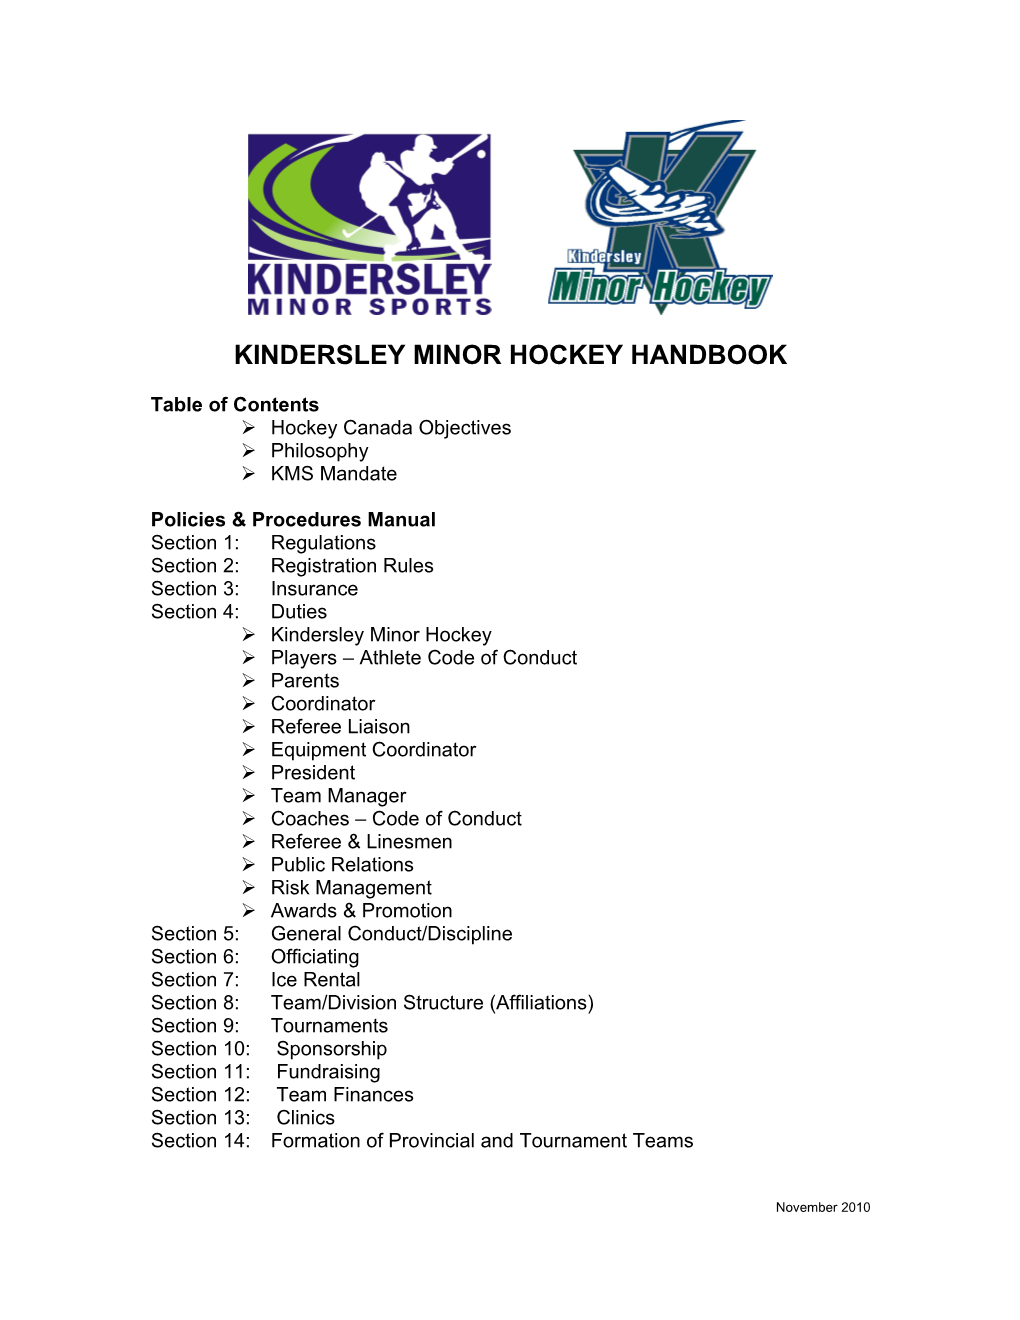 Kindersley Minor Sports Handbook